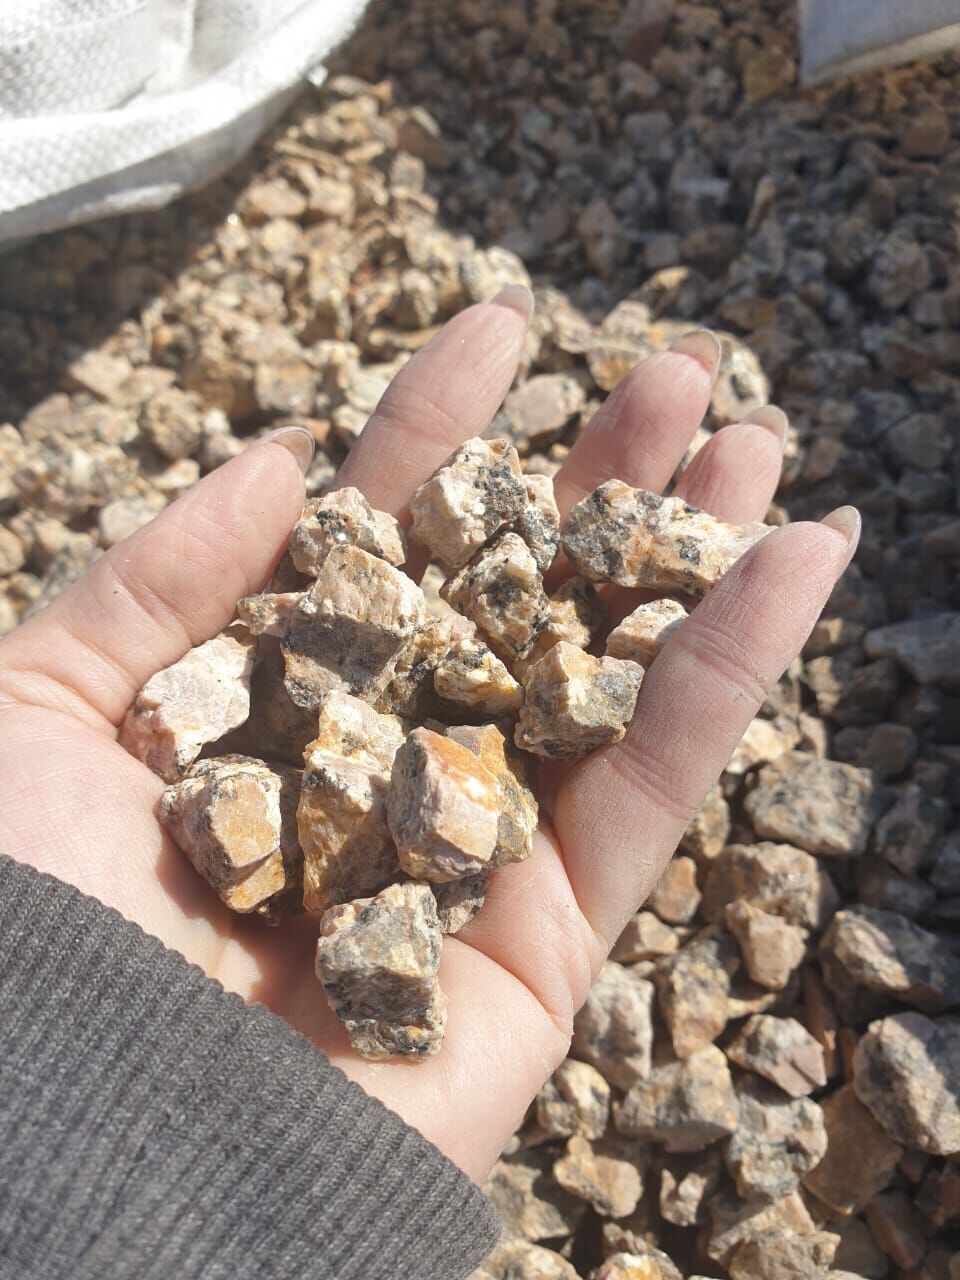 Крошка каменная из природного камня Песчанник, тигровая, ф 10-20мм. мешок 19-20кг колотая, натуральная